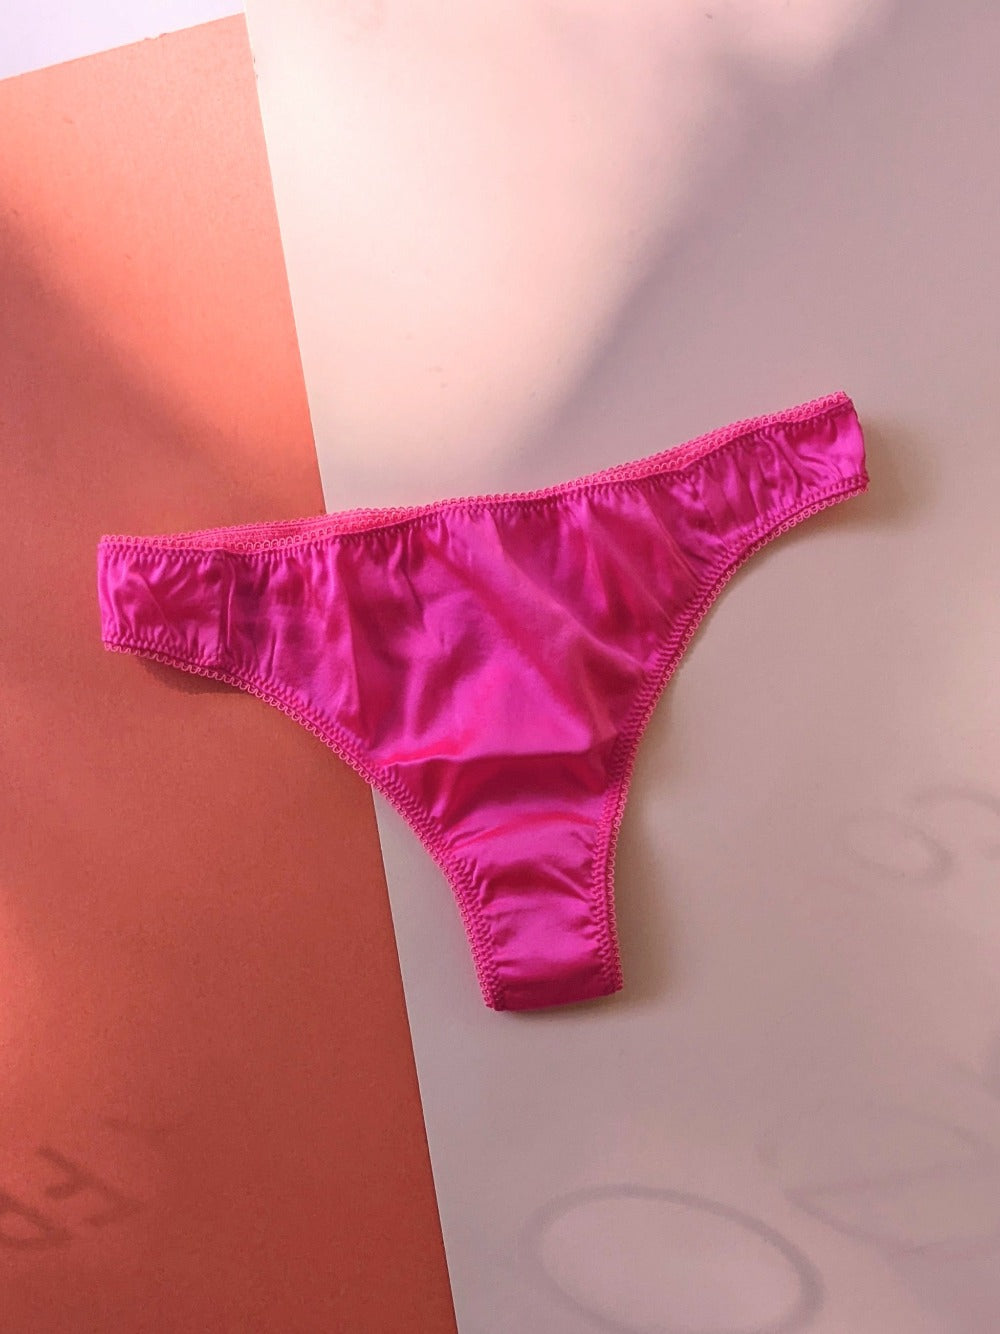 Araks: Grier Silk Thong - Parfait Pink